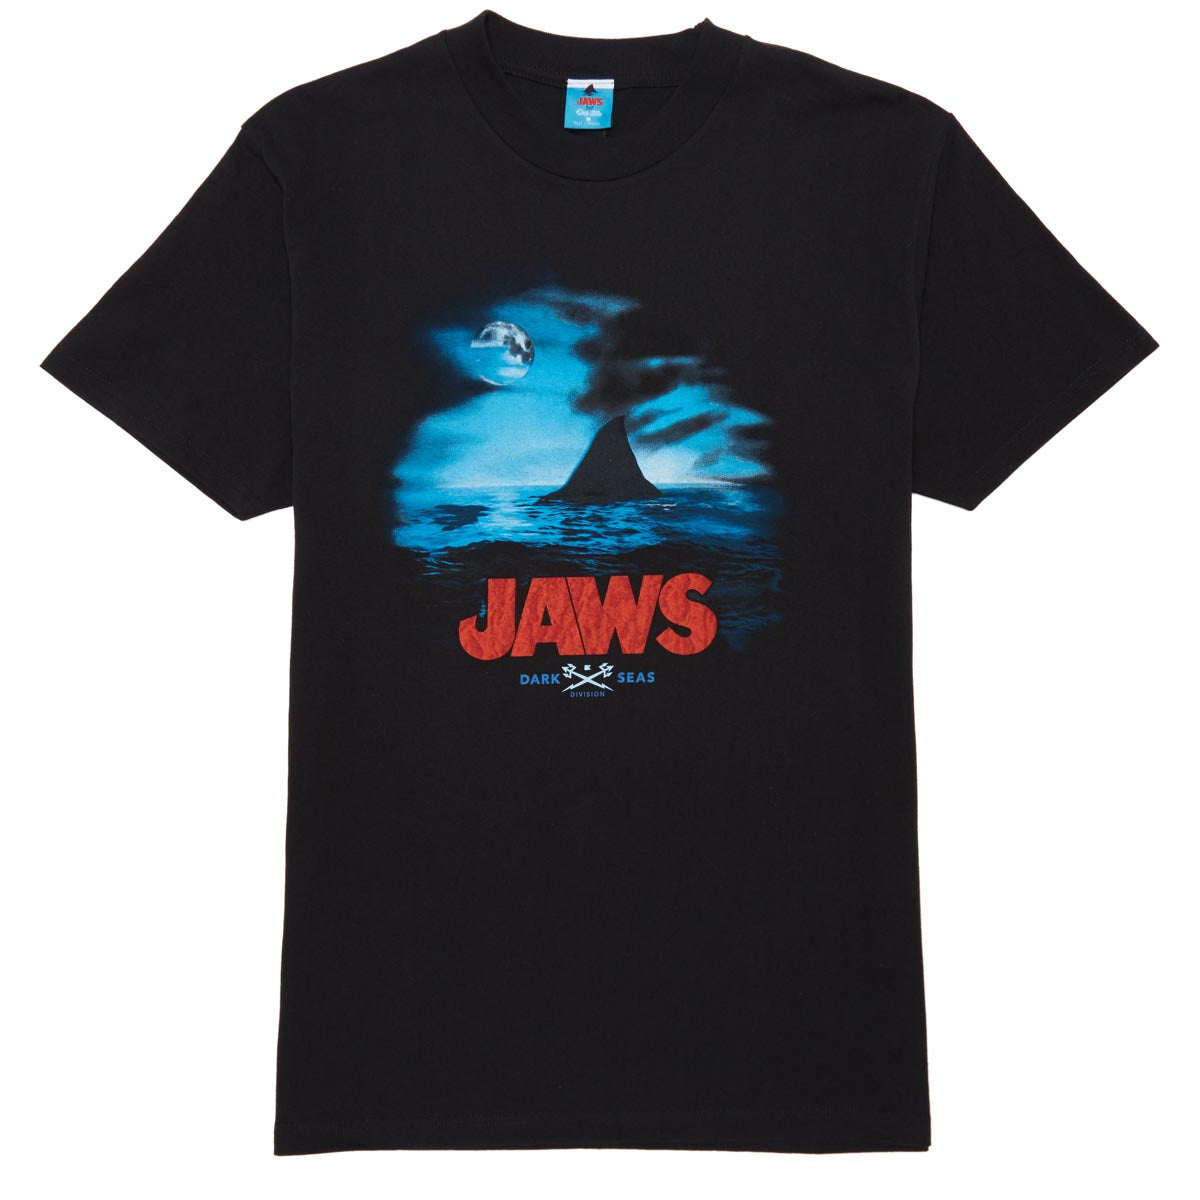 Dark Seas x Jaws Super Thriller T-Shirt - Black image 1